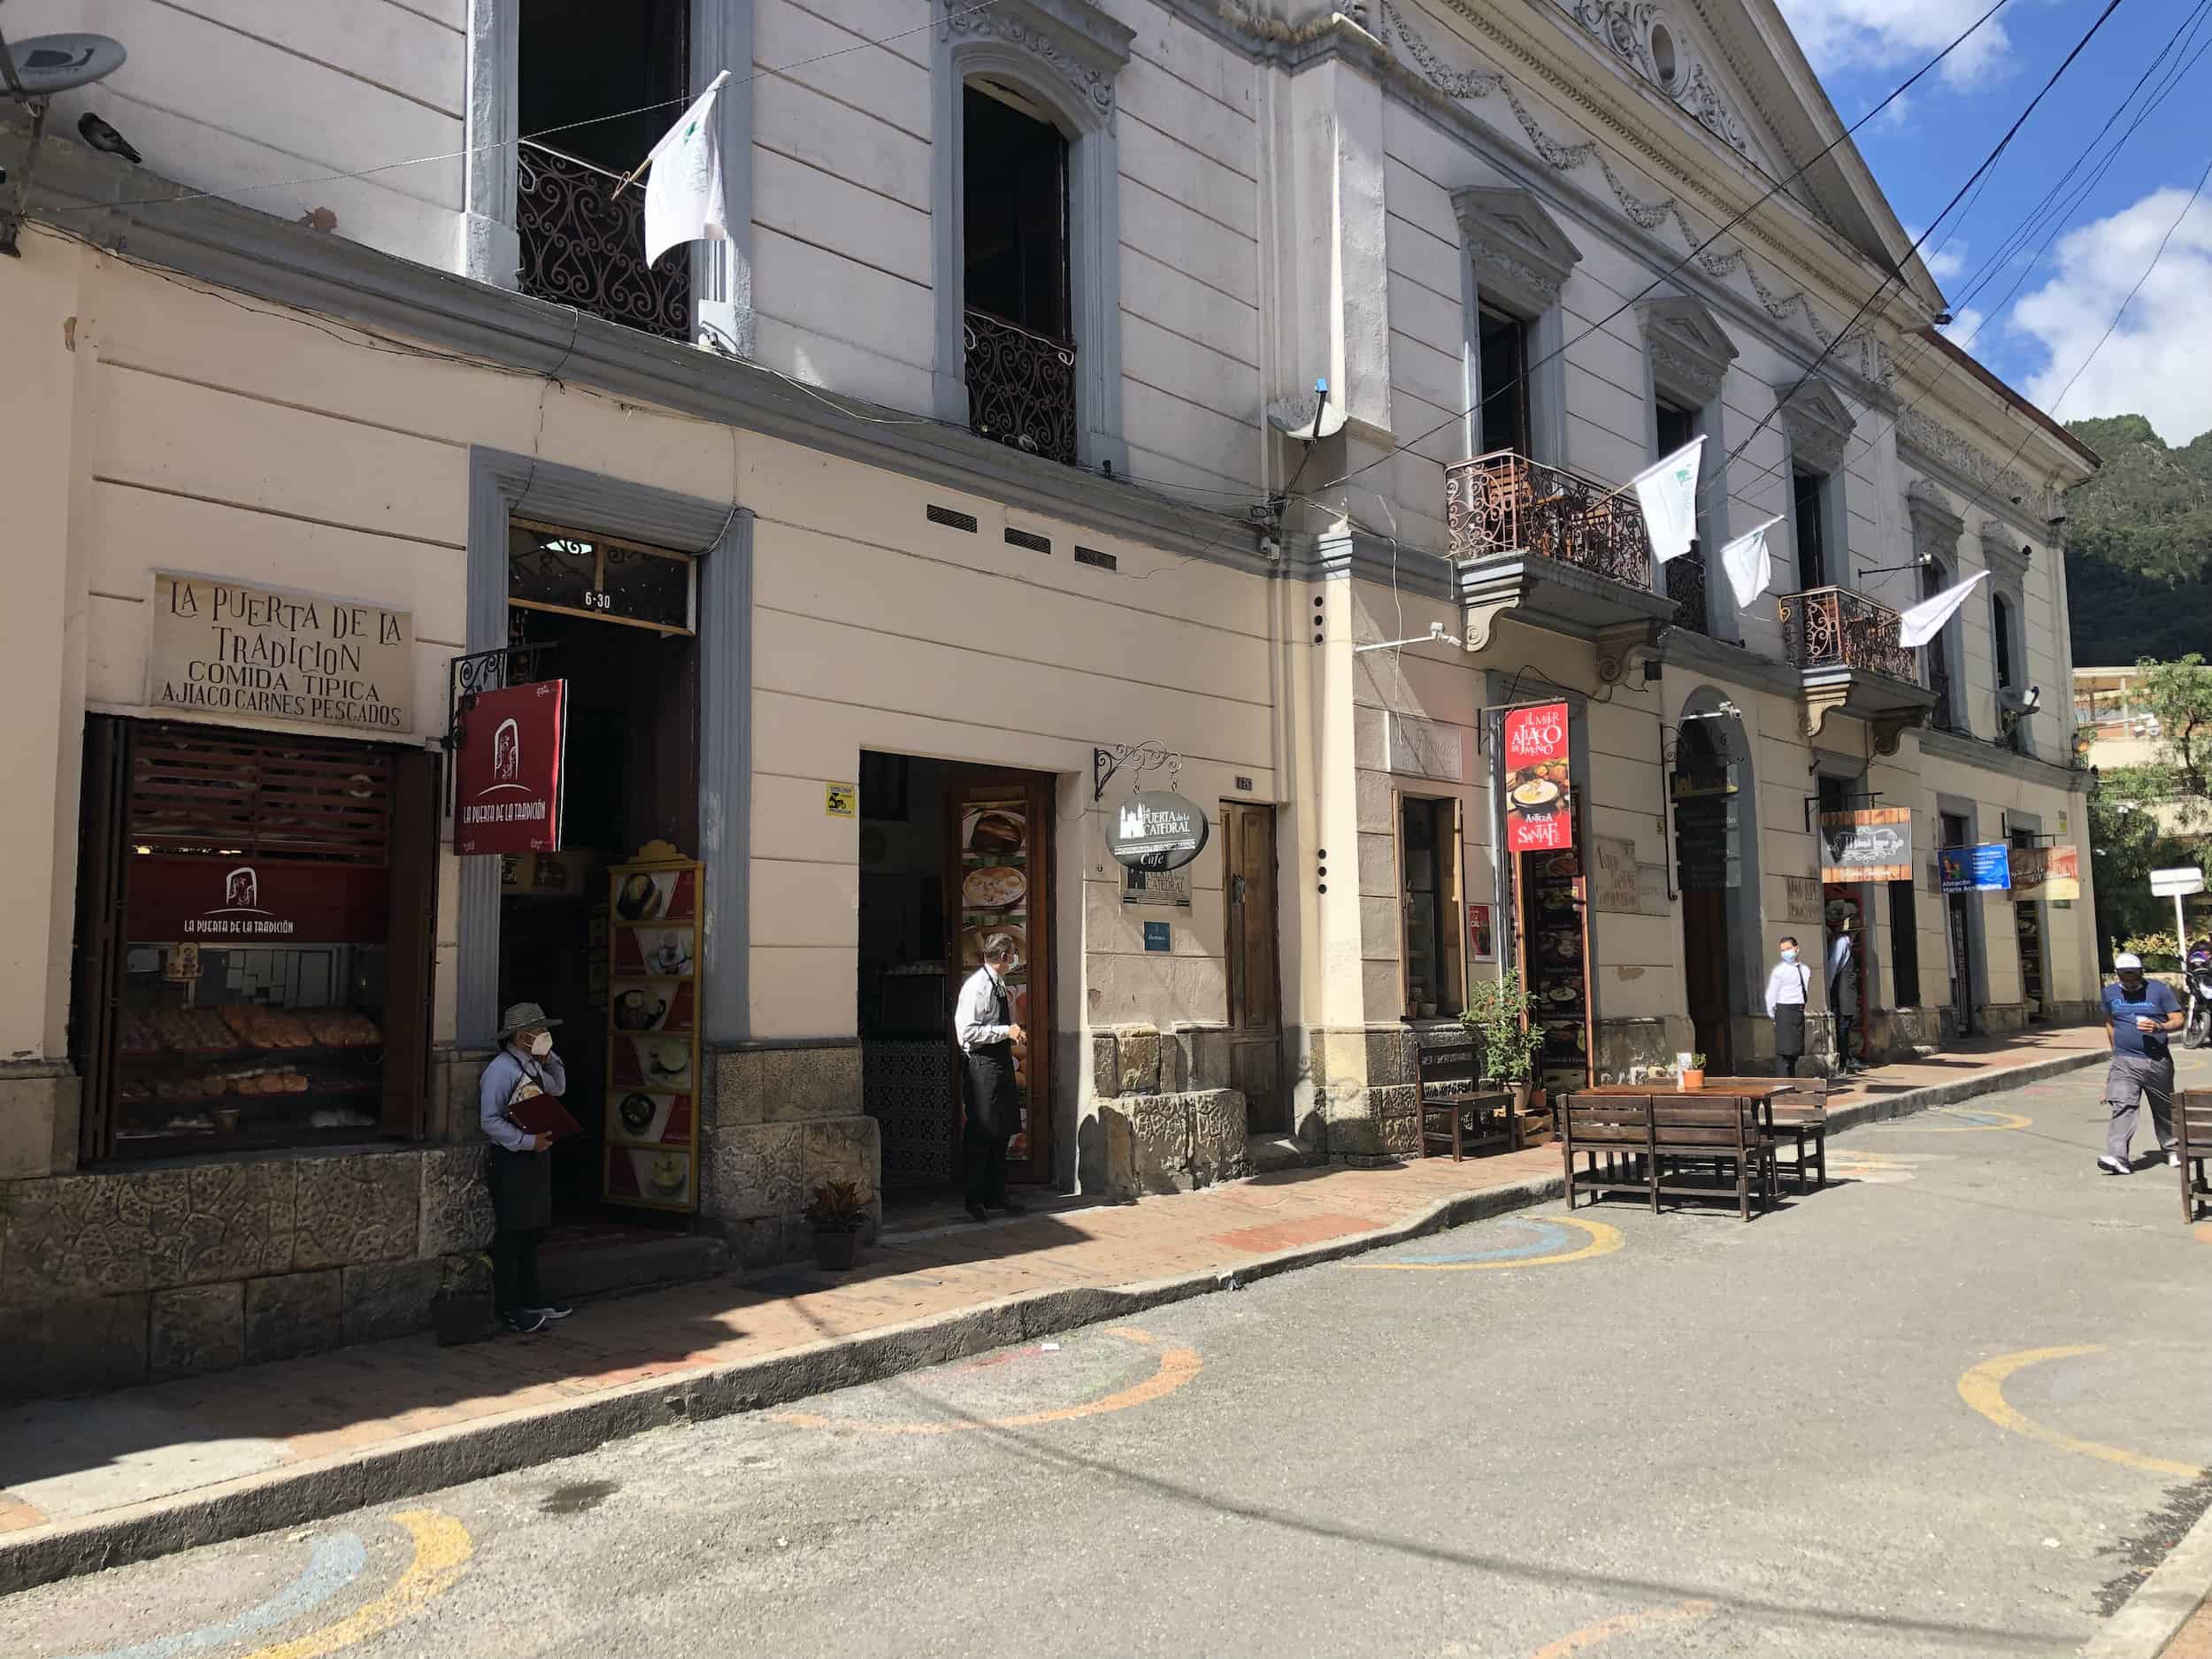 "Ajiaco Street" in La Candelaria, Bogotá, Colombia